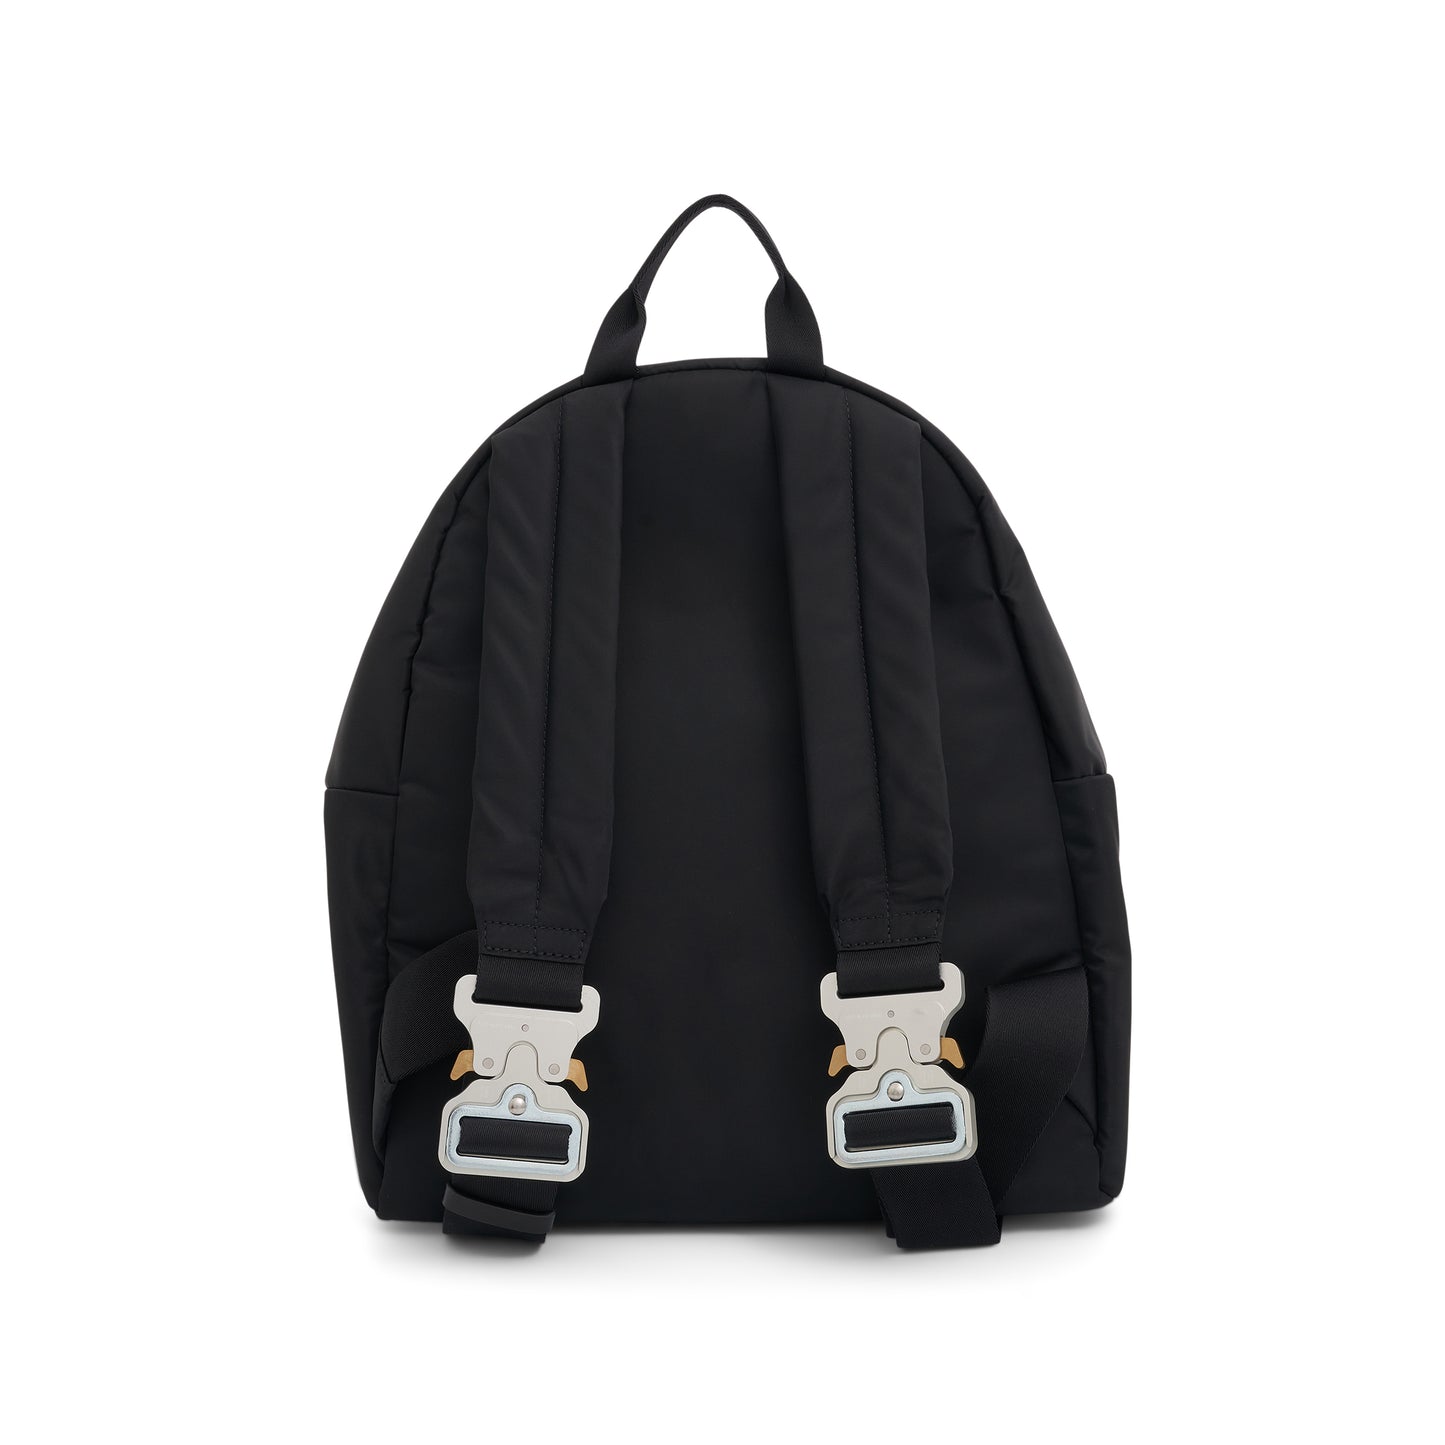 Buckle Shoulder Straps Backpack in Black